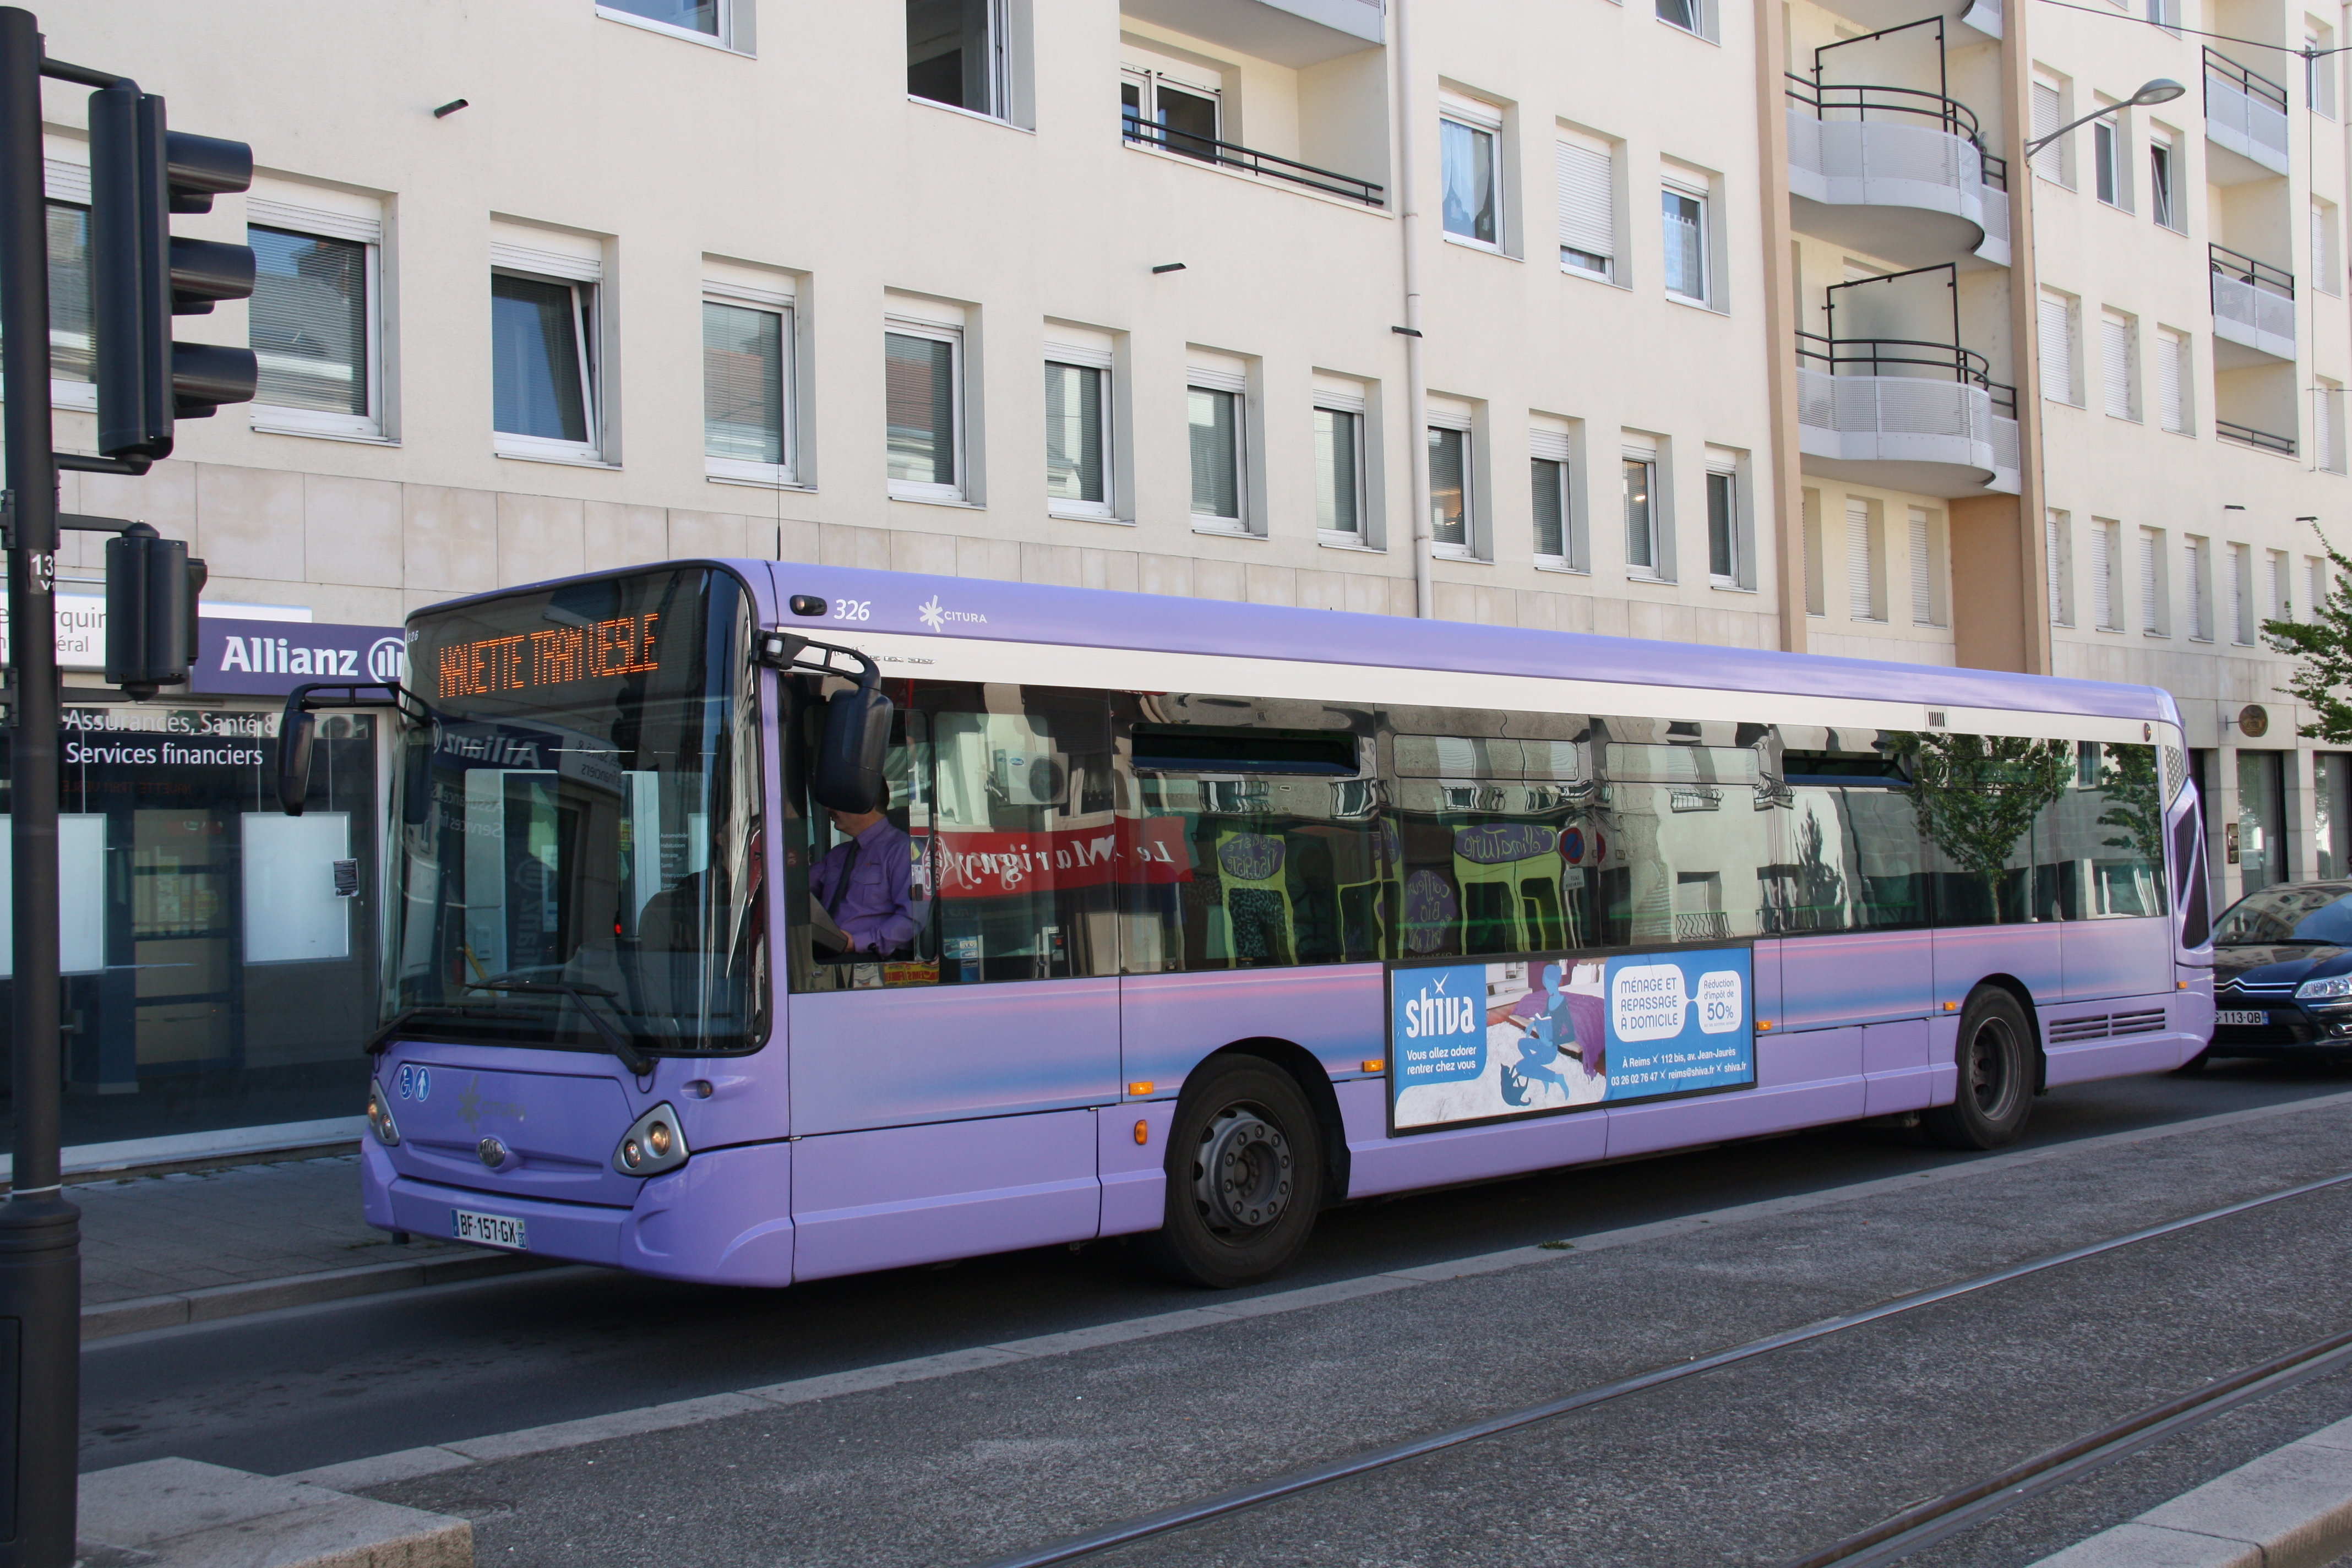 Citura - heuliez bus gx 327 n°326 - ligne tram photo